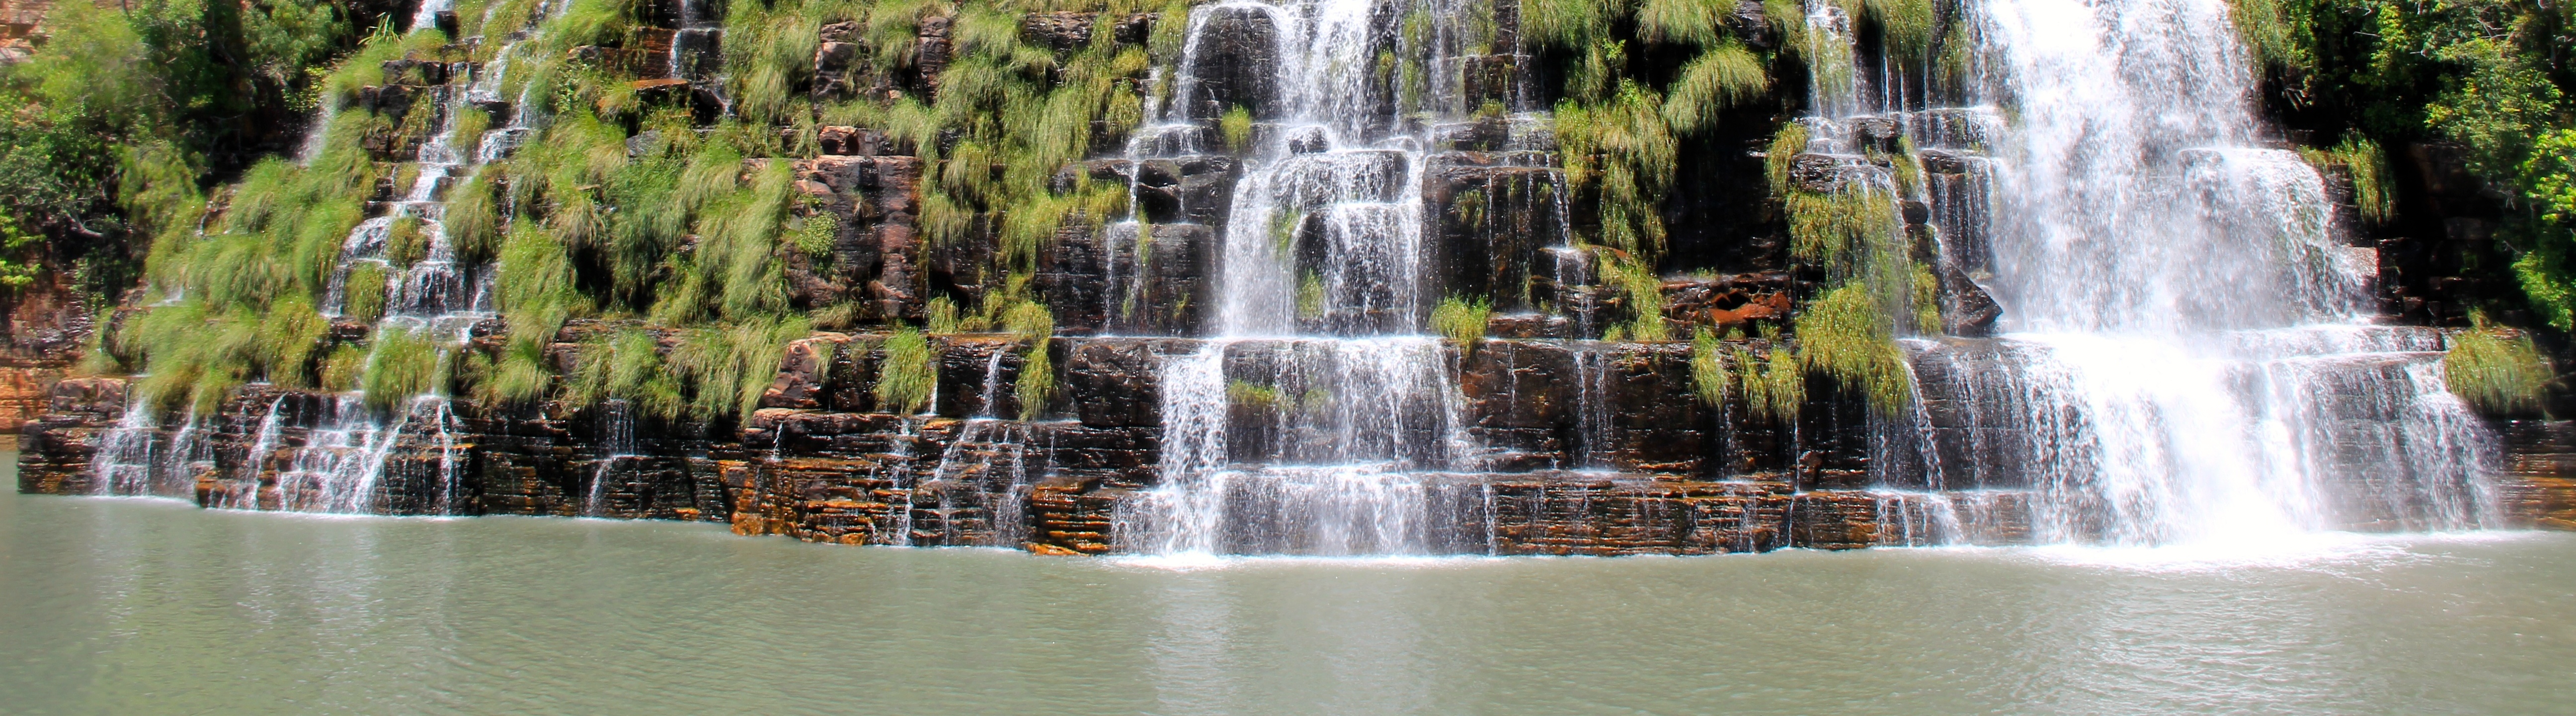 Waterfall, Lady M